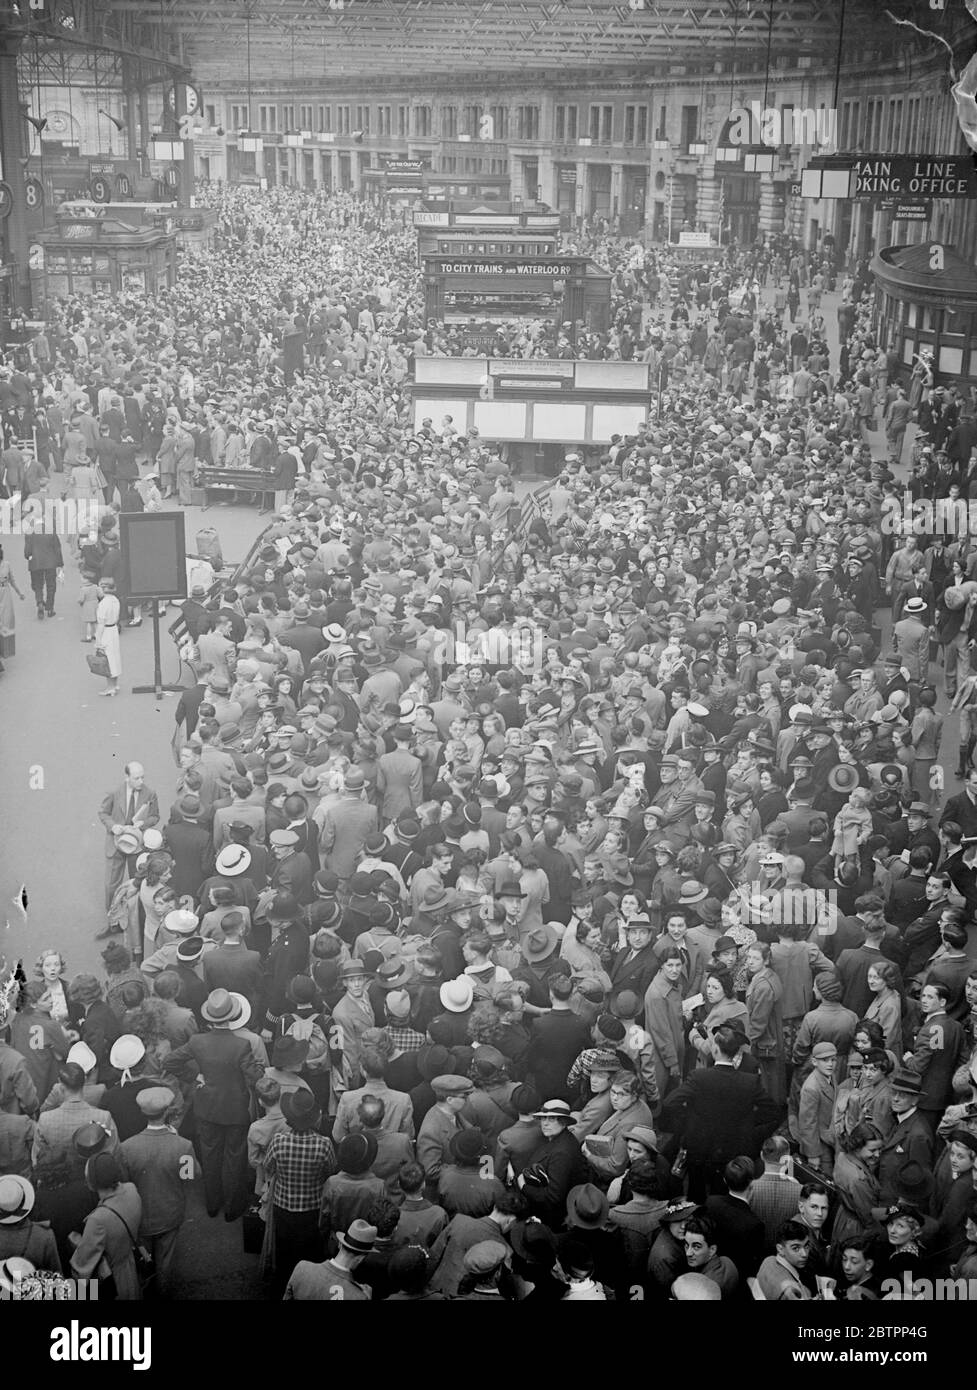 Riesige Urlaubsmassen in Waterloo. Riesige Menschenmengen verließen Waterloo Station, um im August einen Urlaub auf dem Land oder am Meer zu verbringen. Foto zeigt, die riesige Menge wartet auf Urlaub Züge in Waterloo. 30 Juli 1938 Stockfoto